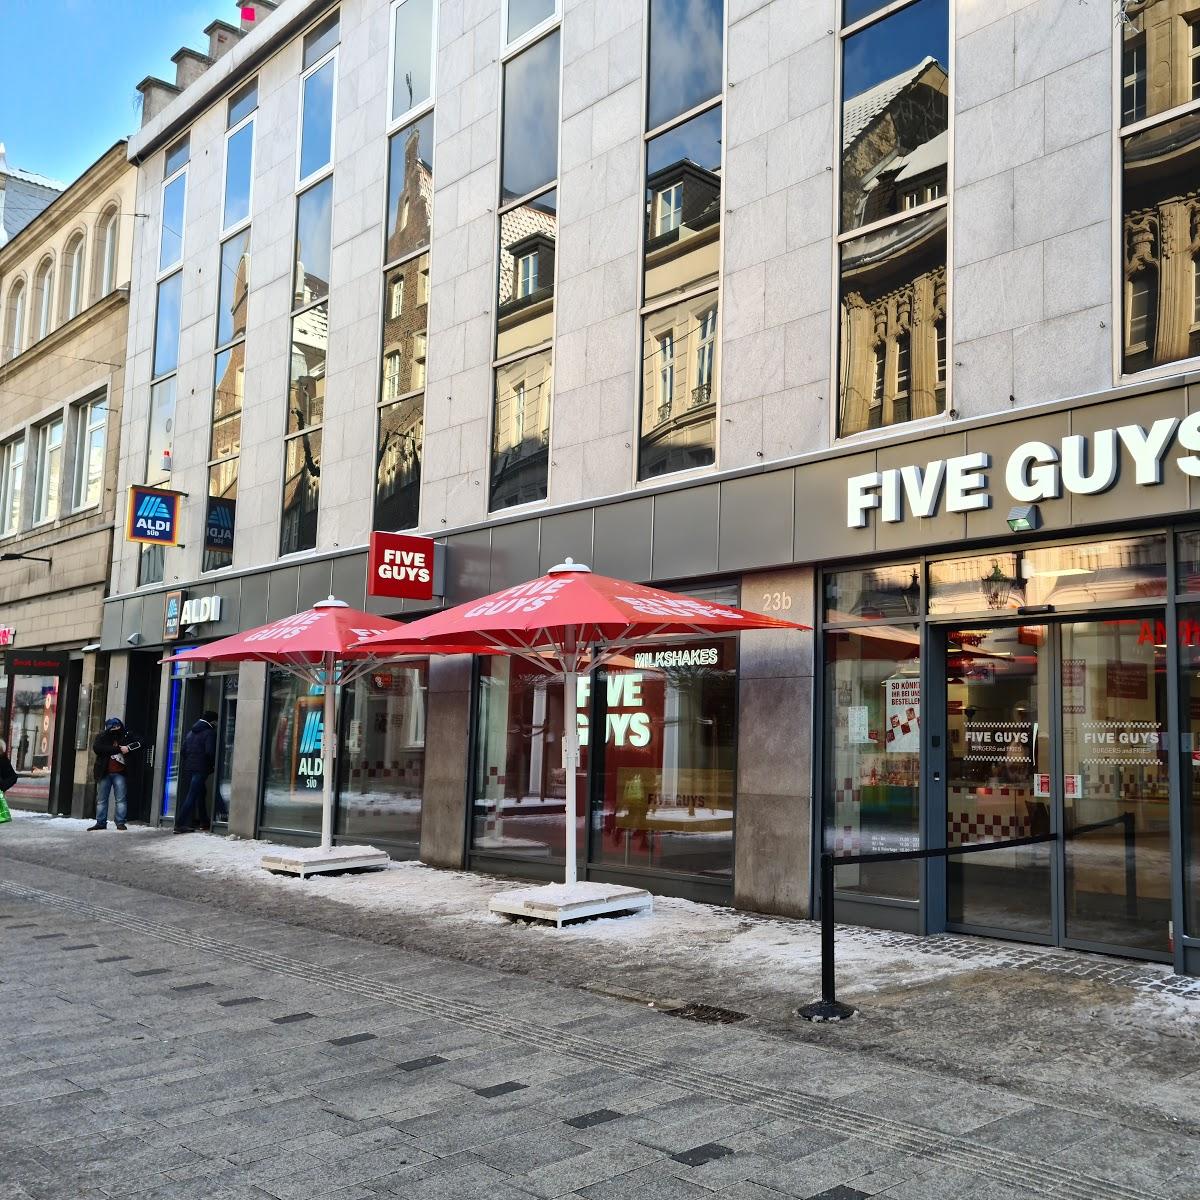 Restaurant "Five Guys" in Düsseldorf